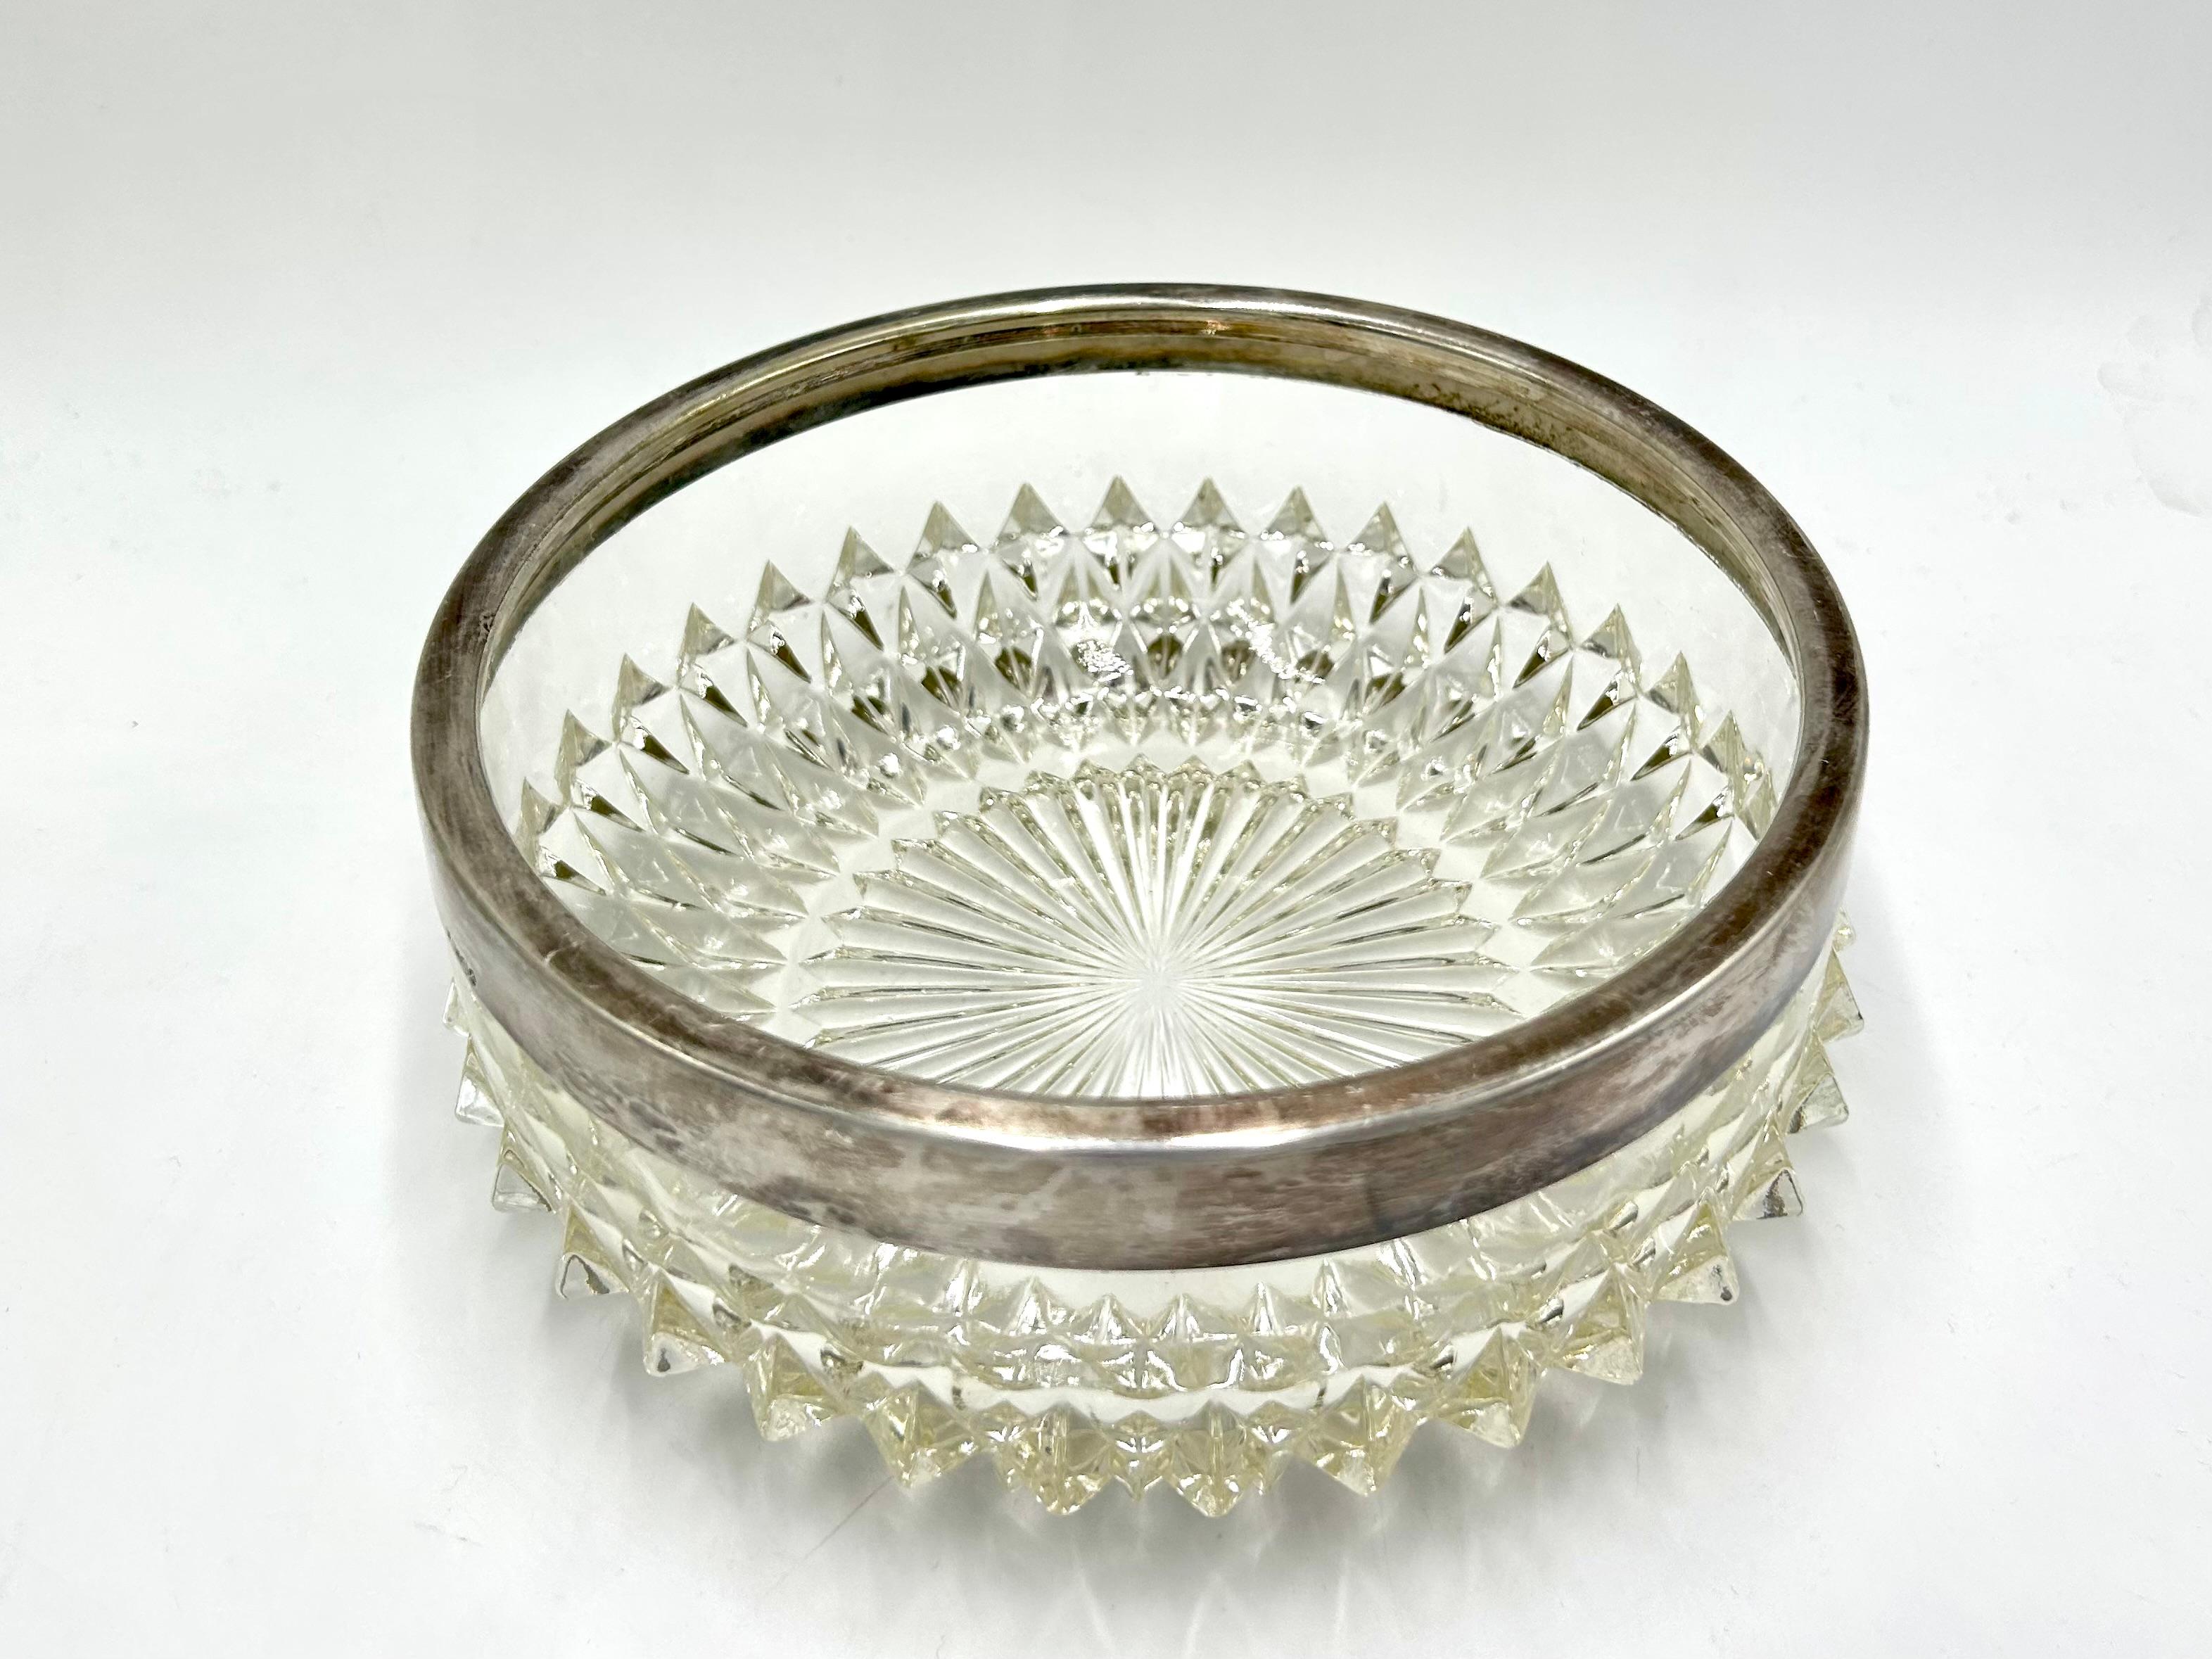 Un bol en cristal pour les bonbons surmonté d'une bague en métal argenté

Très bon état, sans dommage.

hauteur 8cm

diamètre 20cm